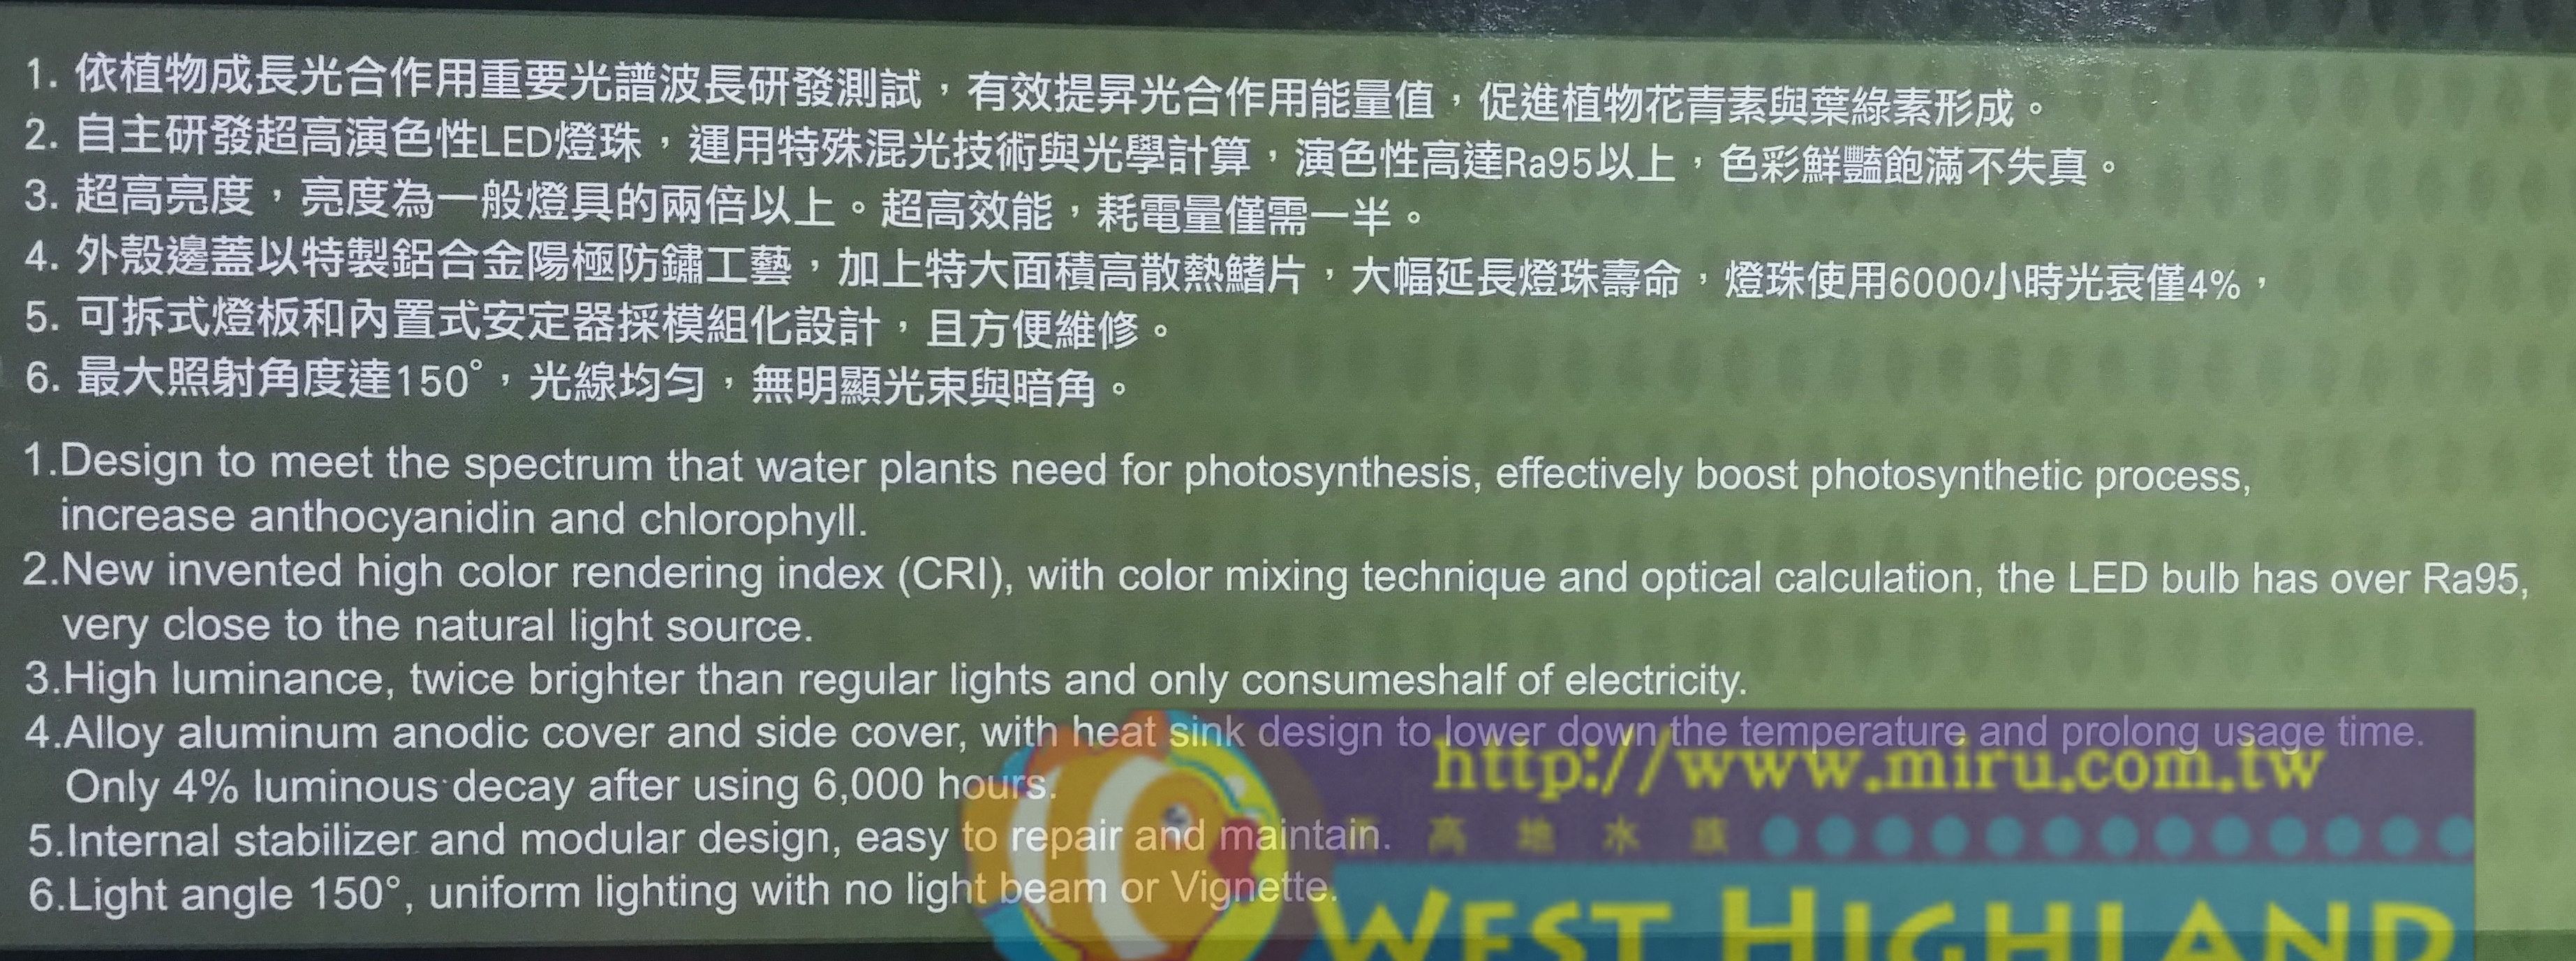 台灣 伊士達 ISTA Led高演色專業植物造景燈 90cm